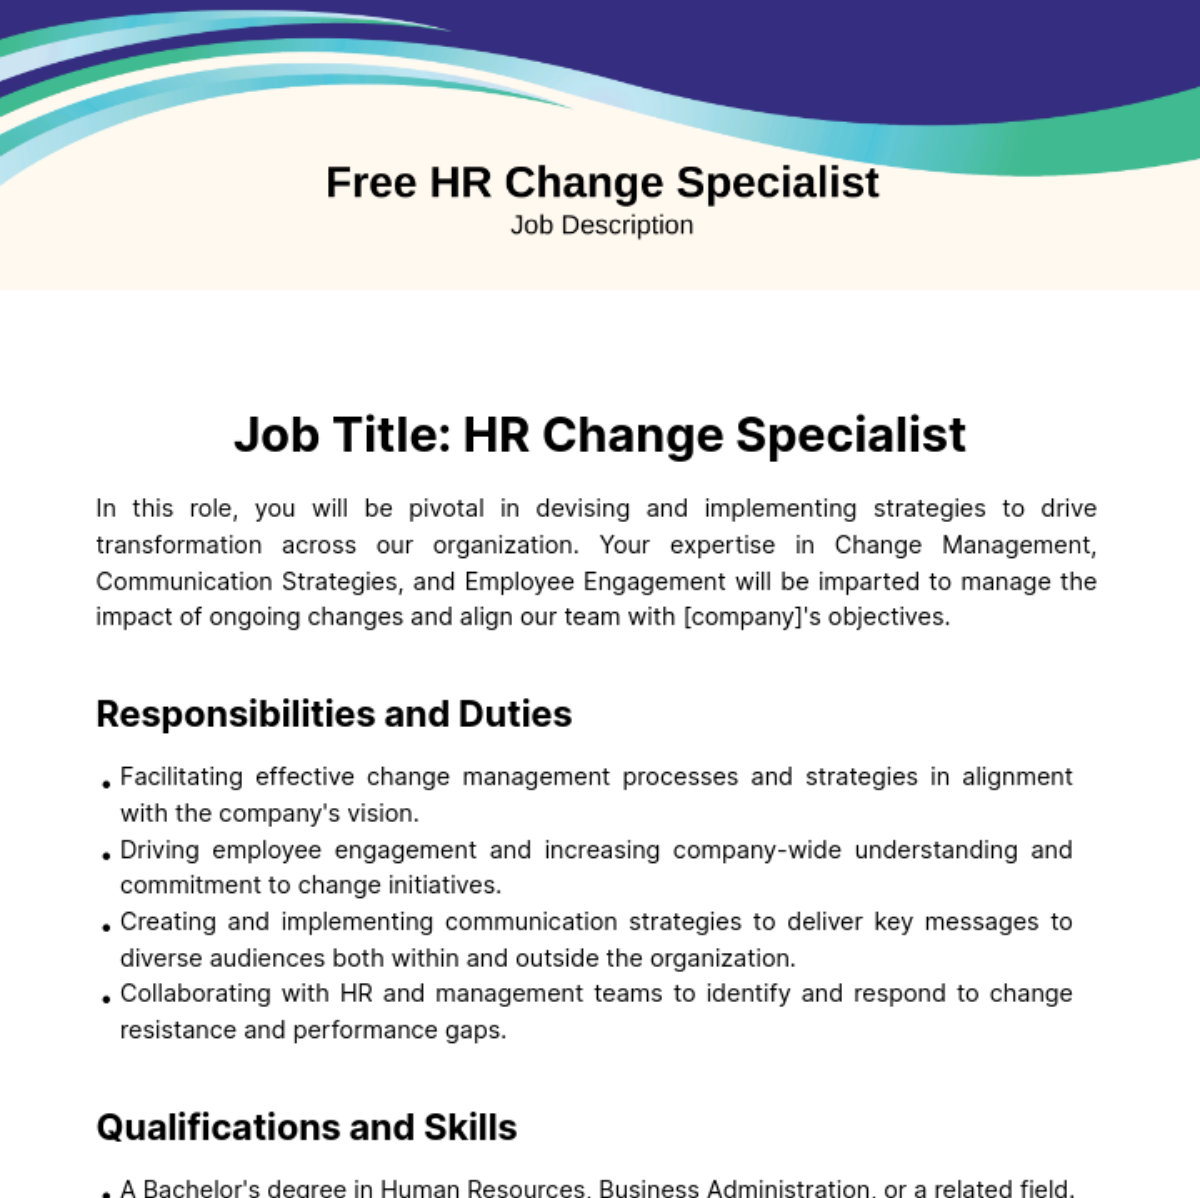 Human Resources (HR) Change Specialist Job Description Template